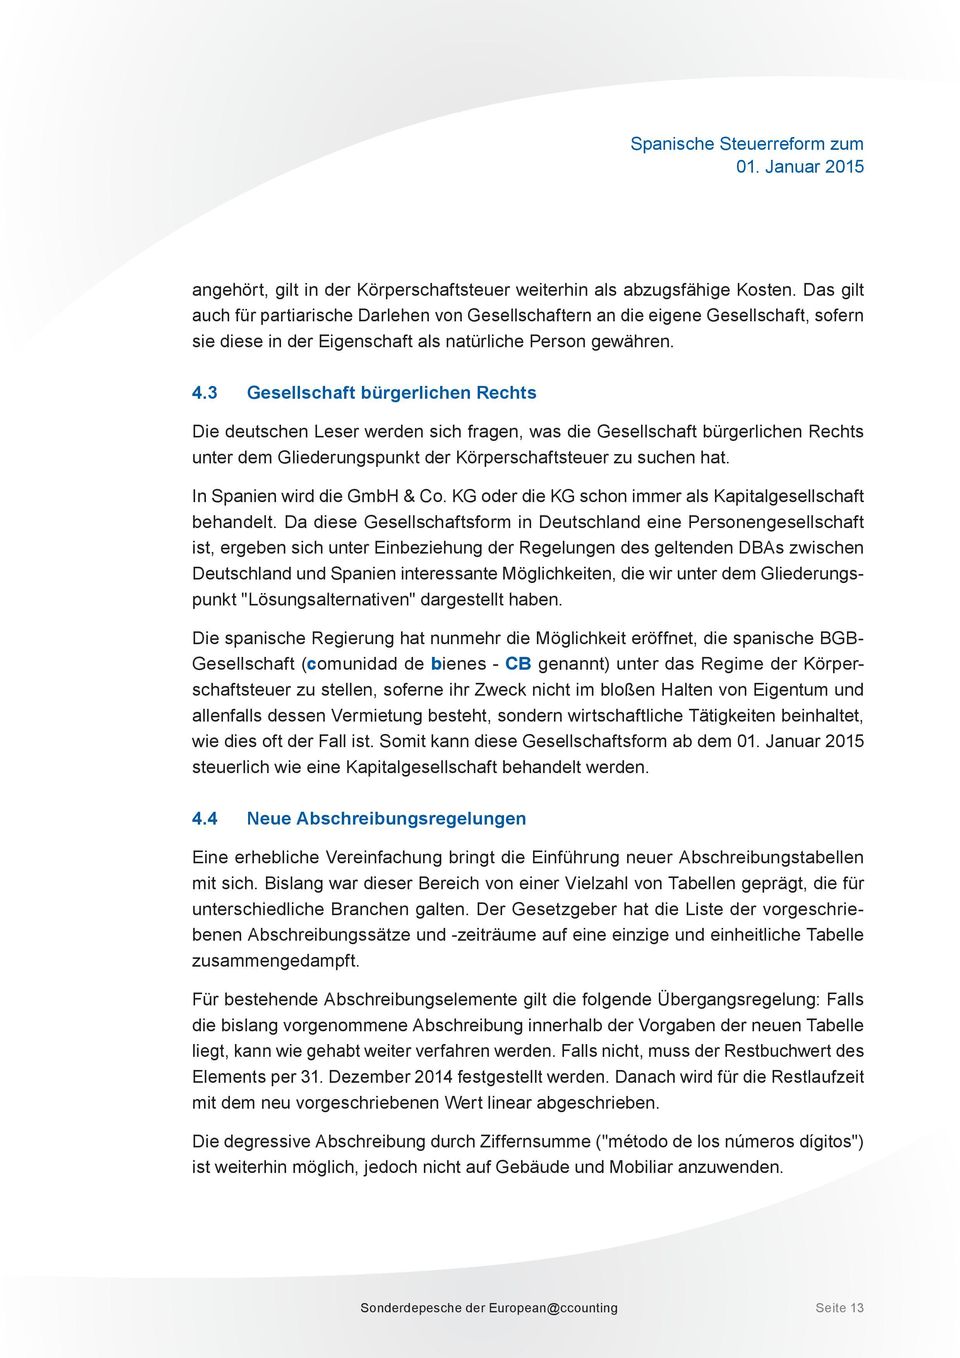 3 Gesellschaft bürgerlichen Rechts Die deutschen Leser werden sich fragen, was die Gesellschaft bürgerlichen Rechts unter dem Gliederungspunkt der Körperschaftsteuer zu suchen hat.